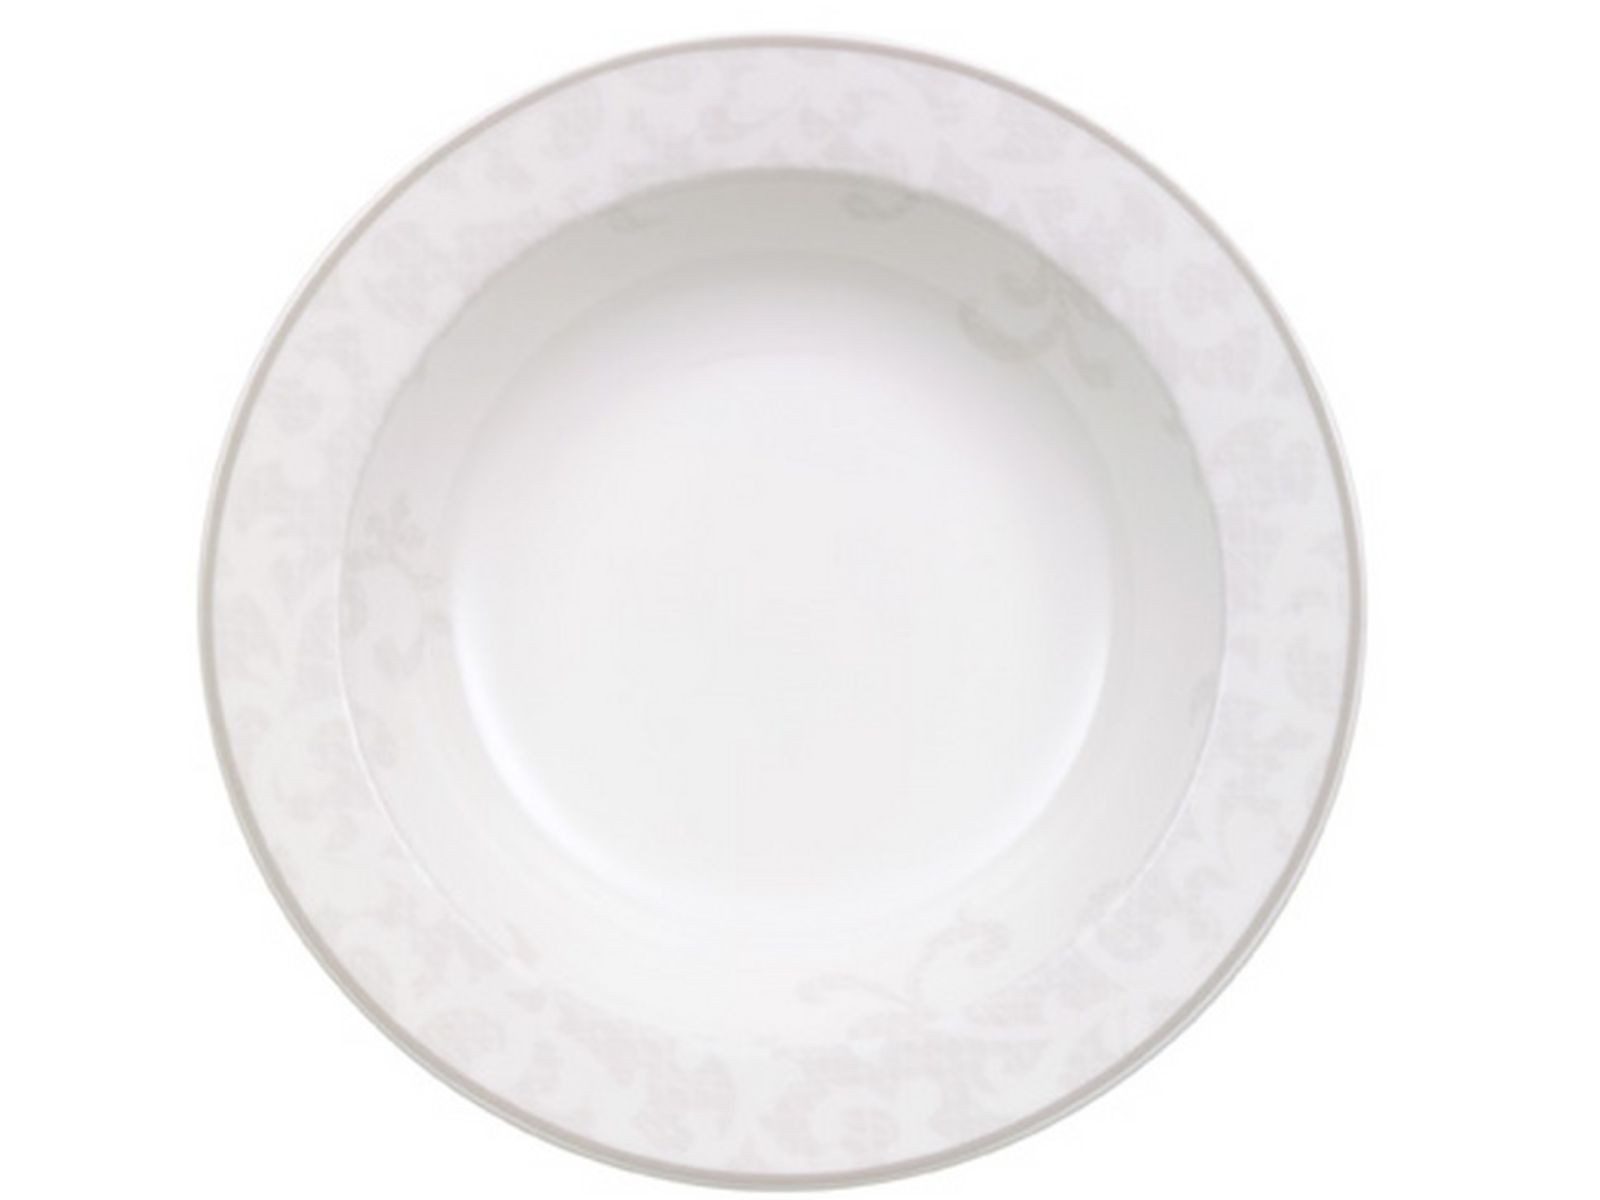 Villeroy & Boch Schale Gray Pearl Salatschale 20 cm, Premium Porcelain, (Salatschalen)